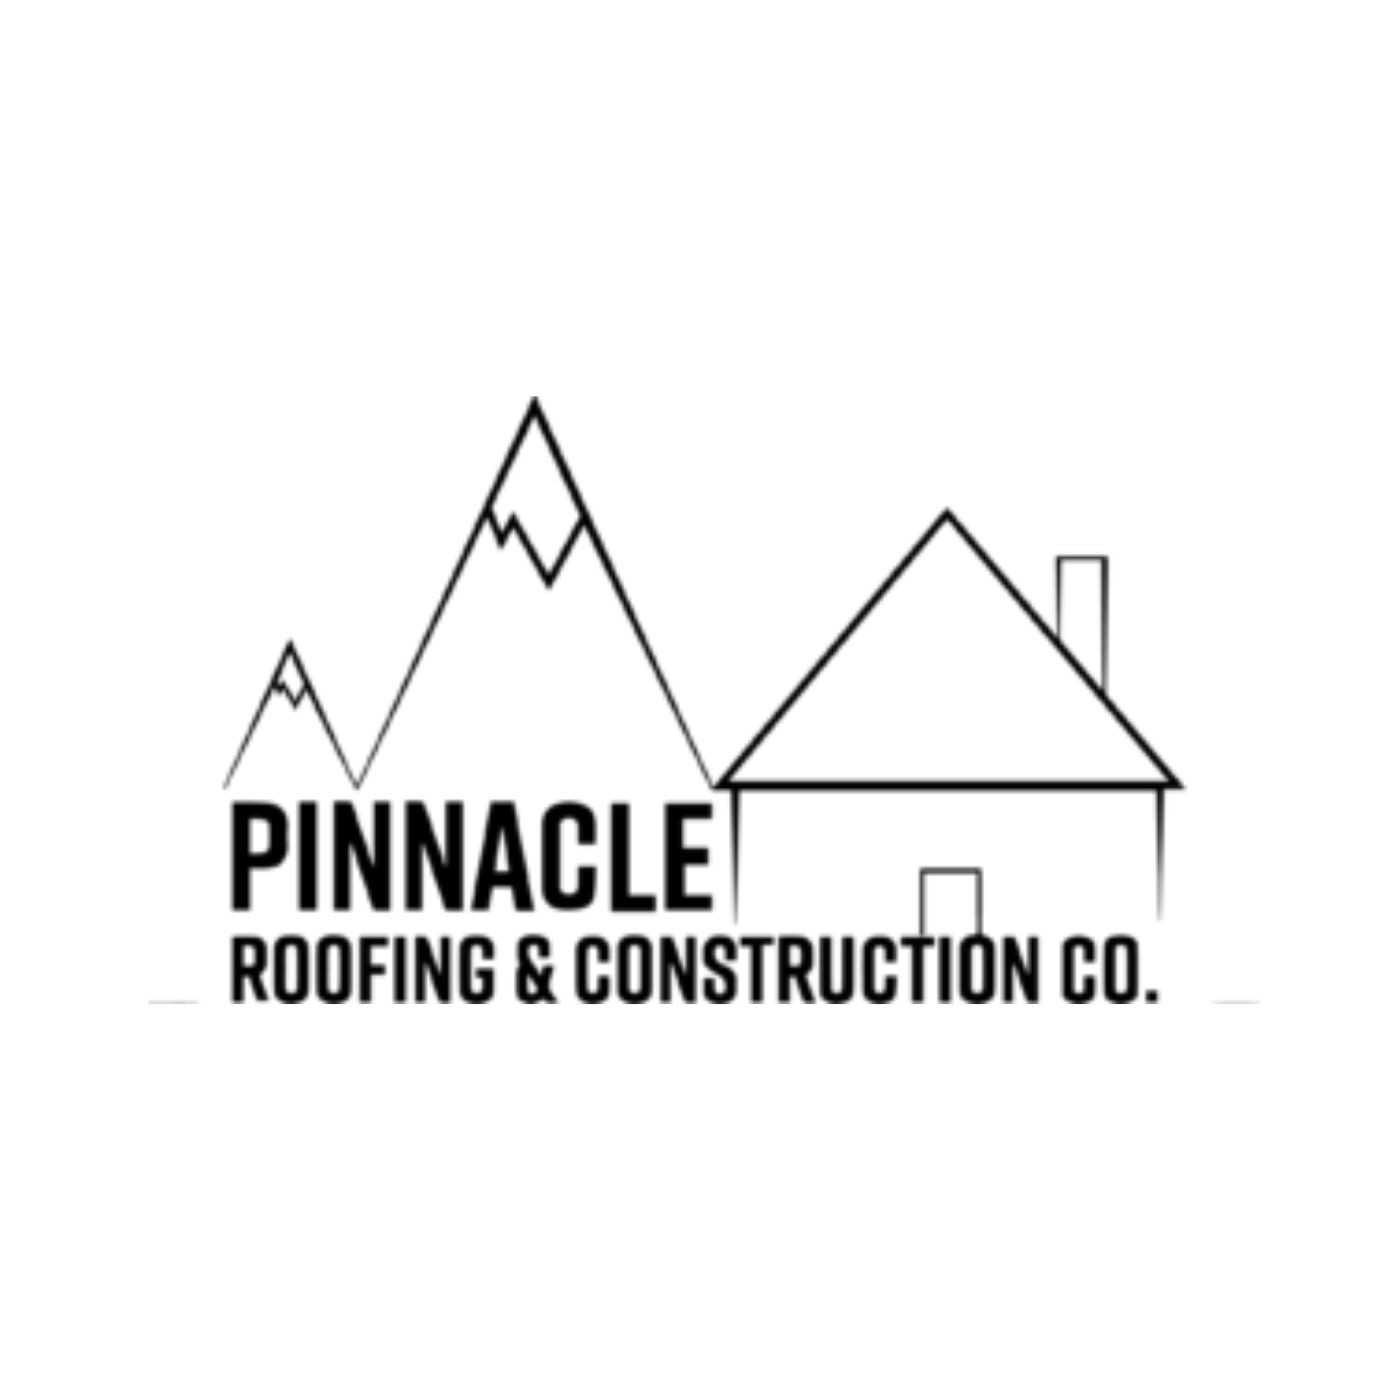 PinnacleRoofing